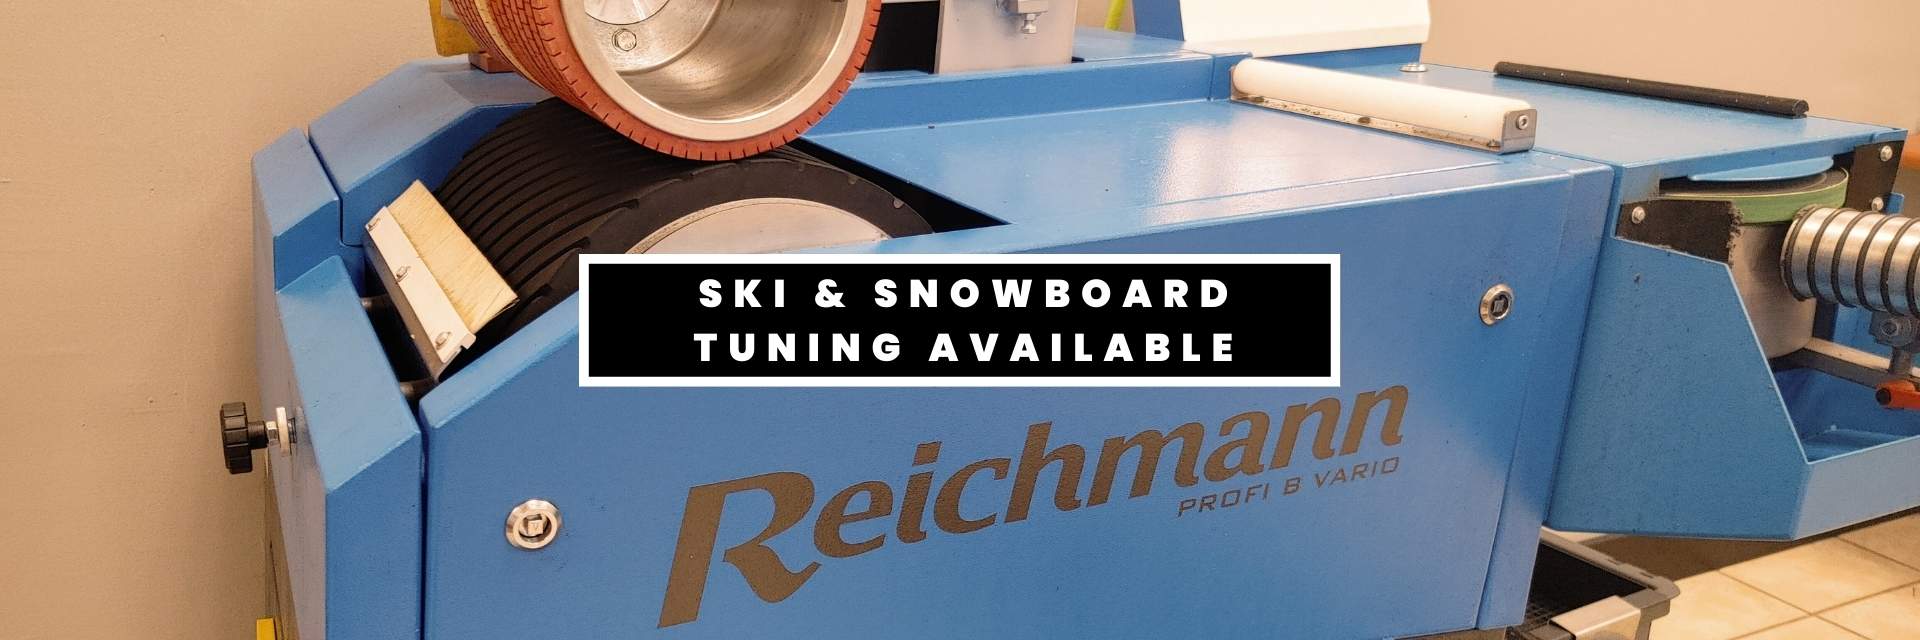 Ski & Snowboard Tuning